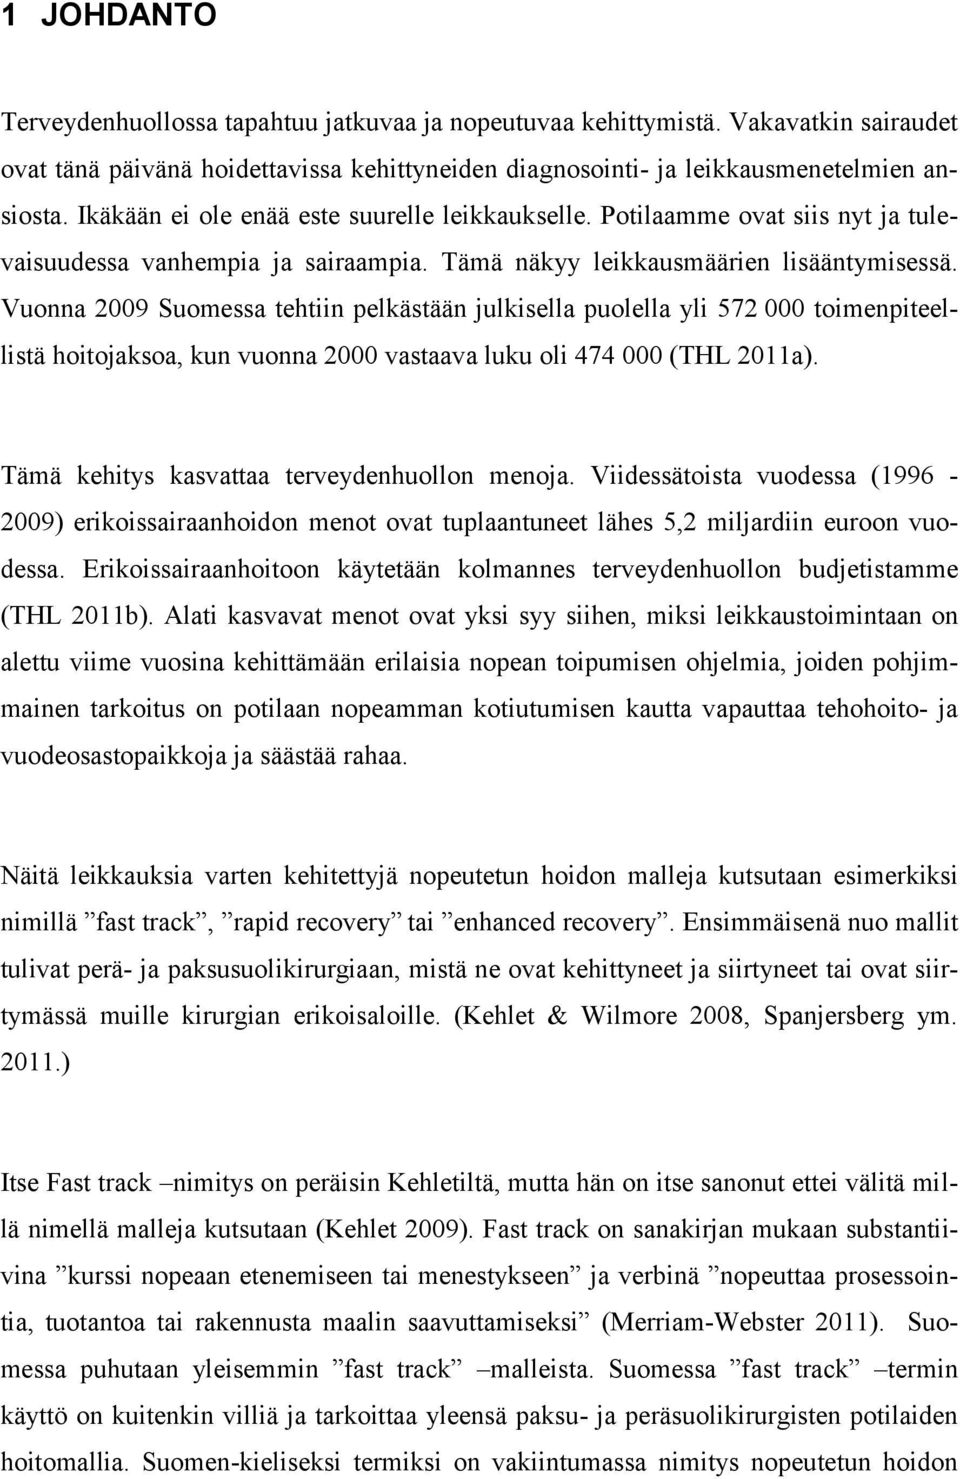 Vuonna 2009 Suomessa tehtiin pelkästään julkisella puolella yli 572 000 toimenpiteellistä hoitojaksoa, kun vuonna 2000 vastaava luku oli 474 000 (THL 2011a).